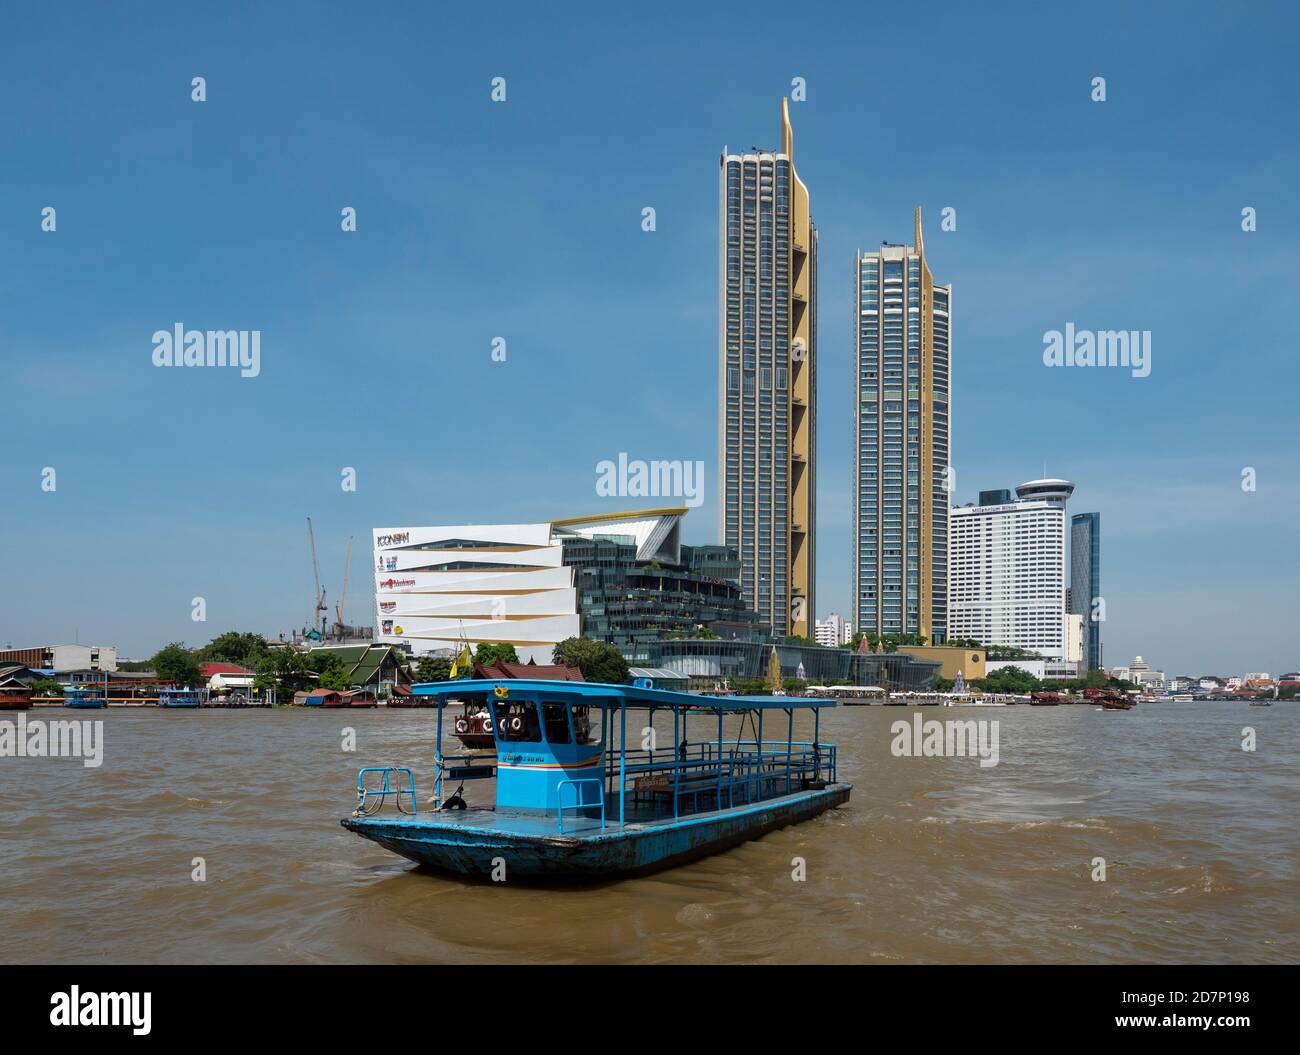 Fiume Chao Praya a Bangkok con un traghetto di traversata sul fiume in primo piano e l'icona del centro commerciale Siam e le torri di residenza sul fiume. Infurt Foto Stock